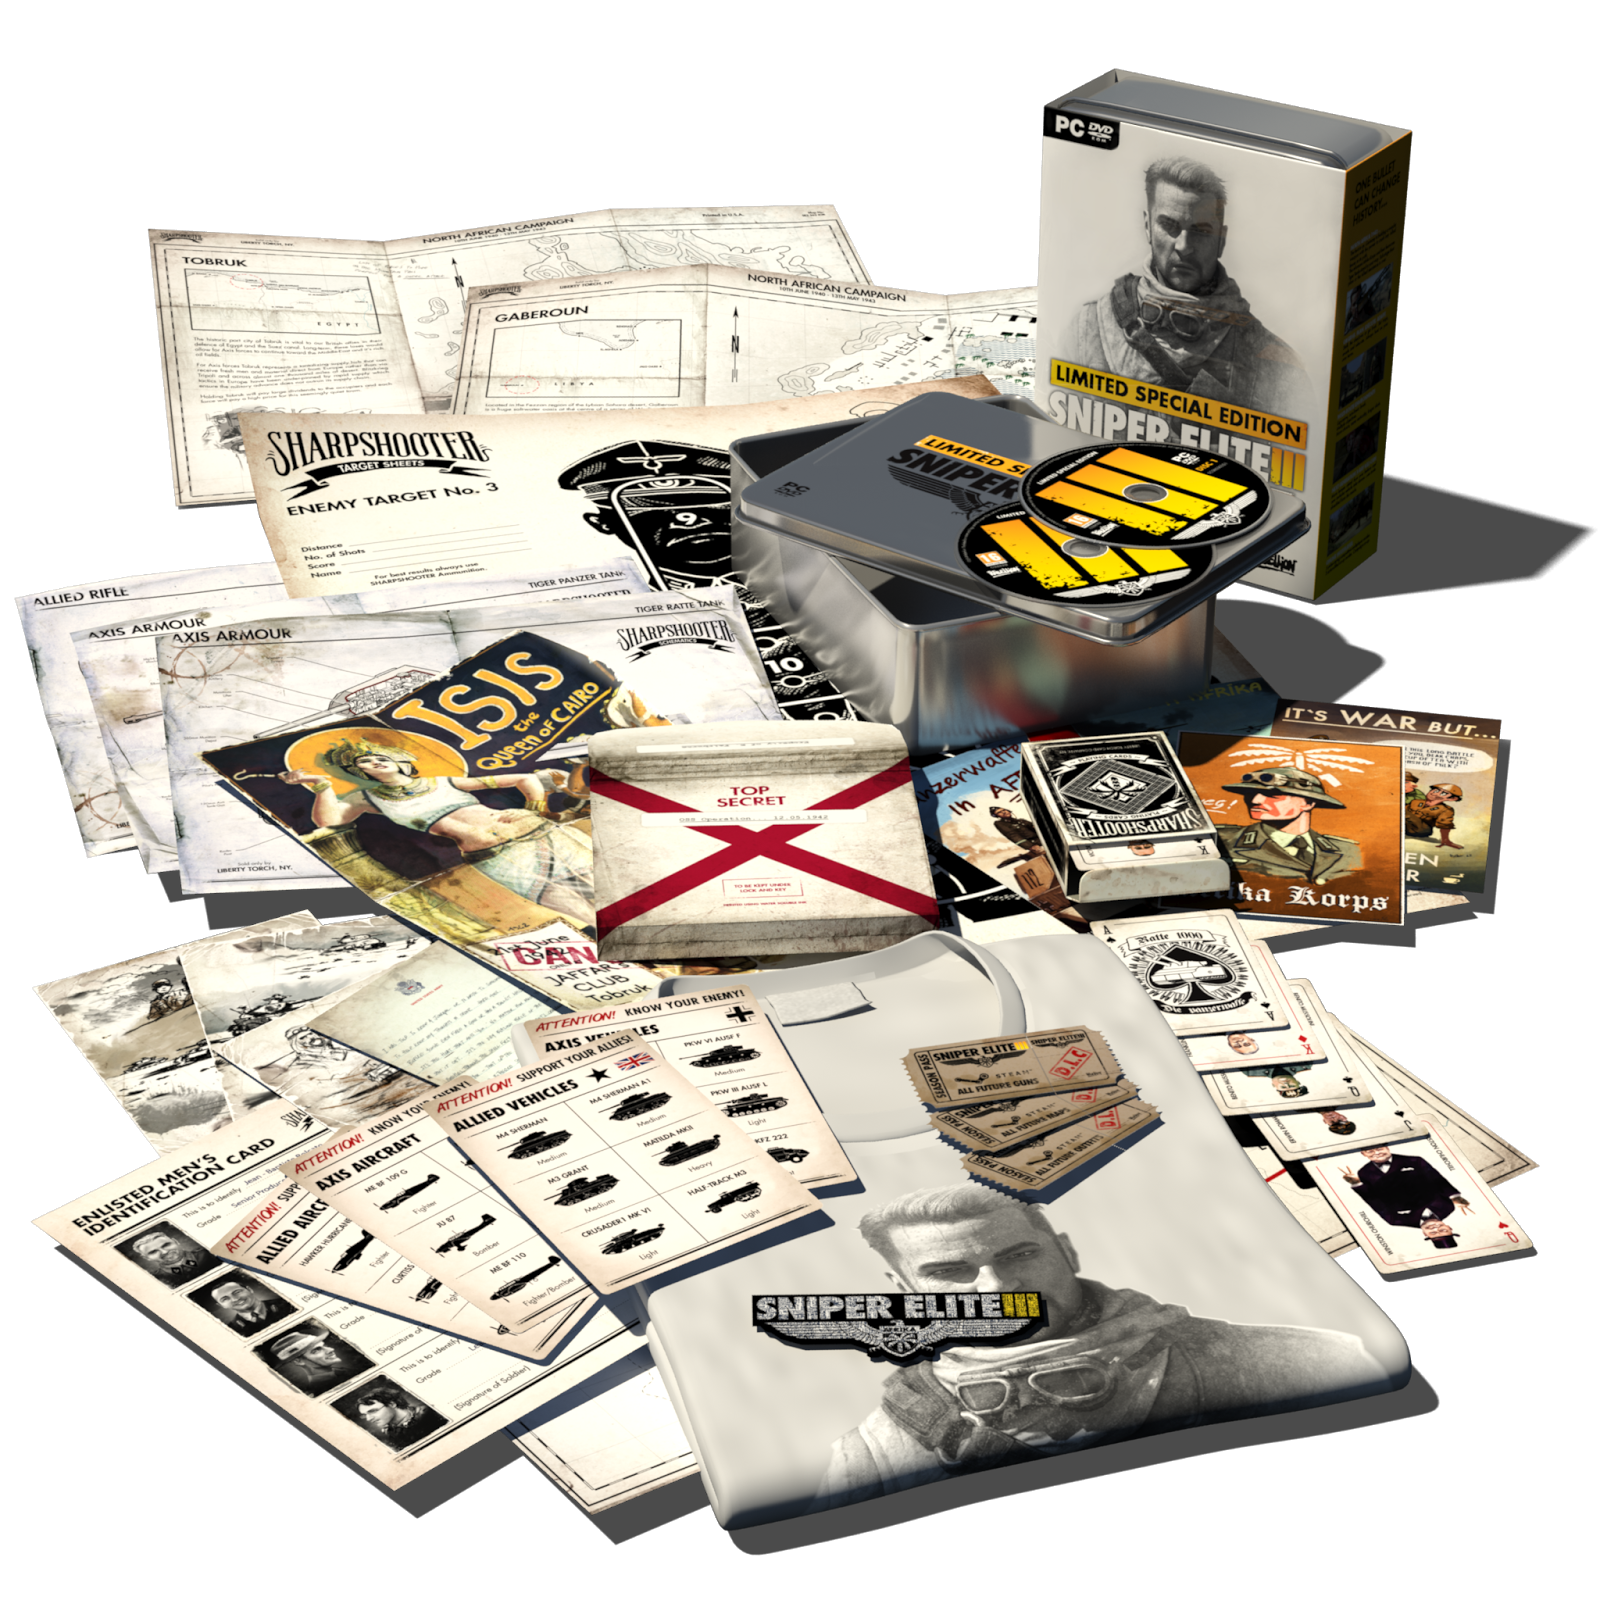 Limited special. Коллекционное издание Sniper Elite 3. Sniper Elite 4 коллекционное издание. Sniper Elite 3 что такое игральные карты. Sniper Elite 4 Collector Edition.